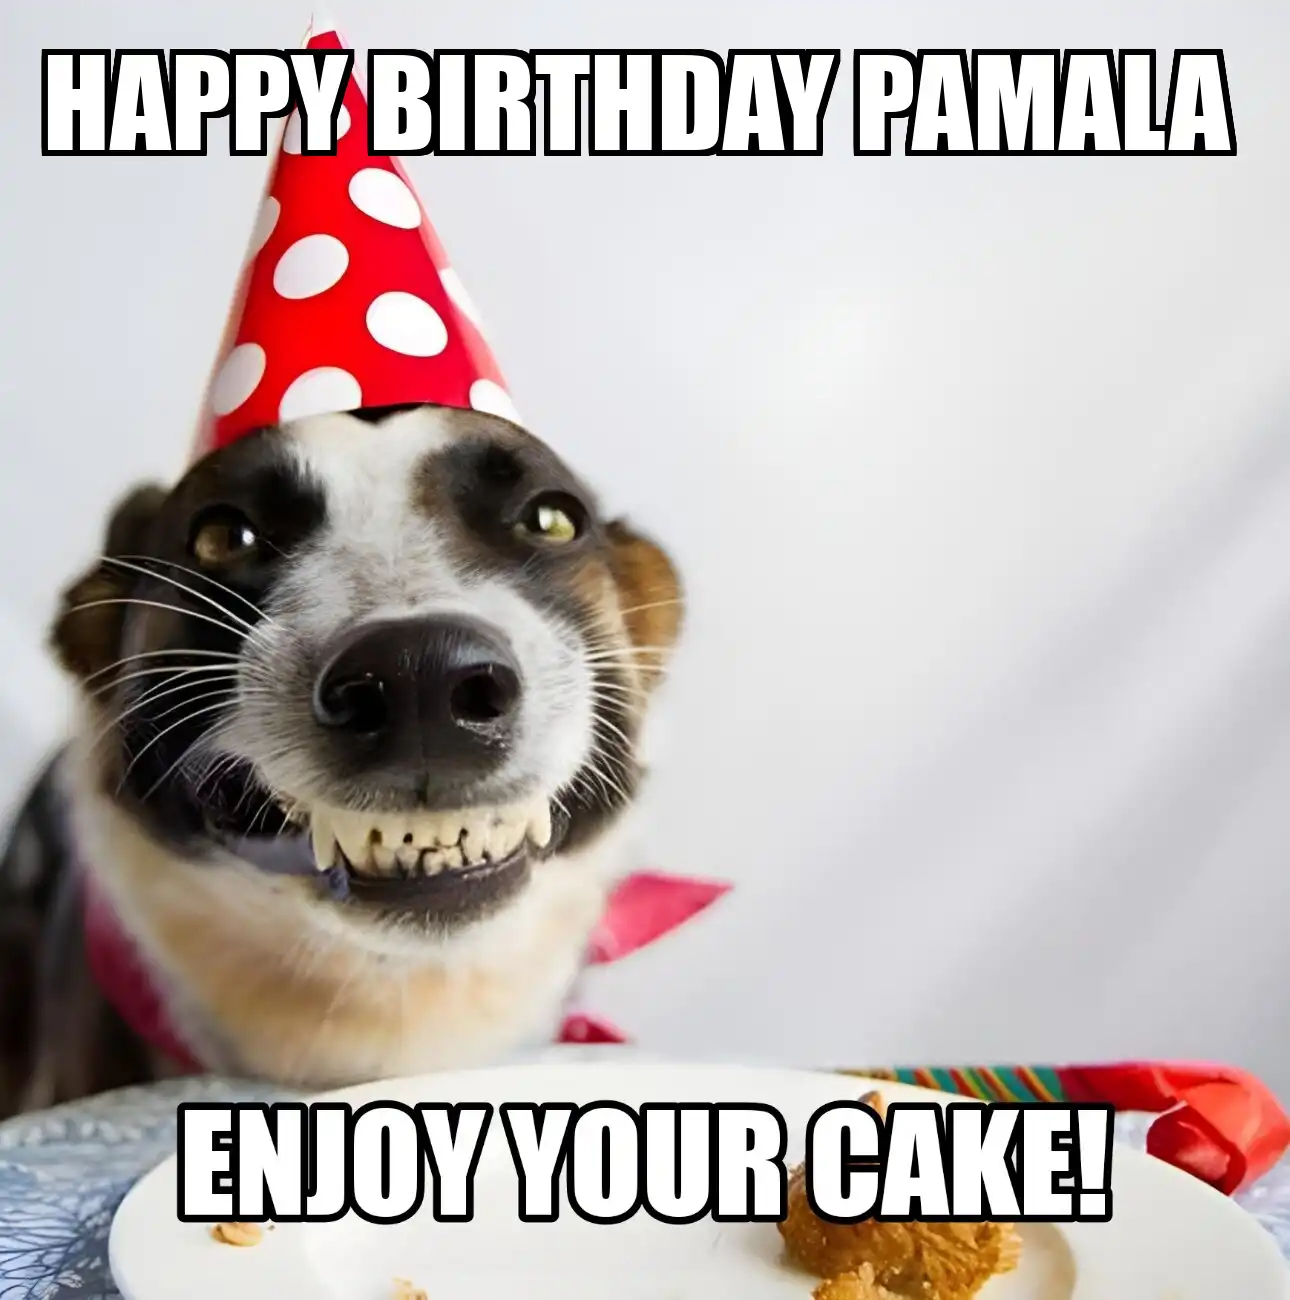 Happy Birthday Pamala Enjoy Your Cake Dog Meme